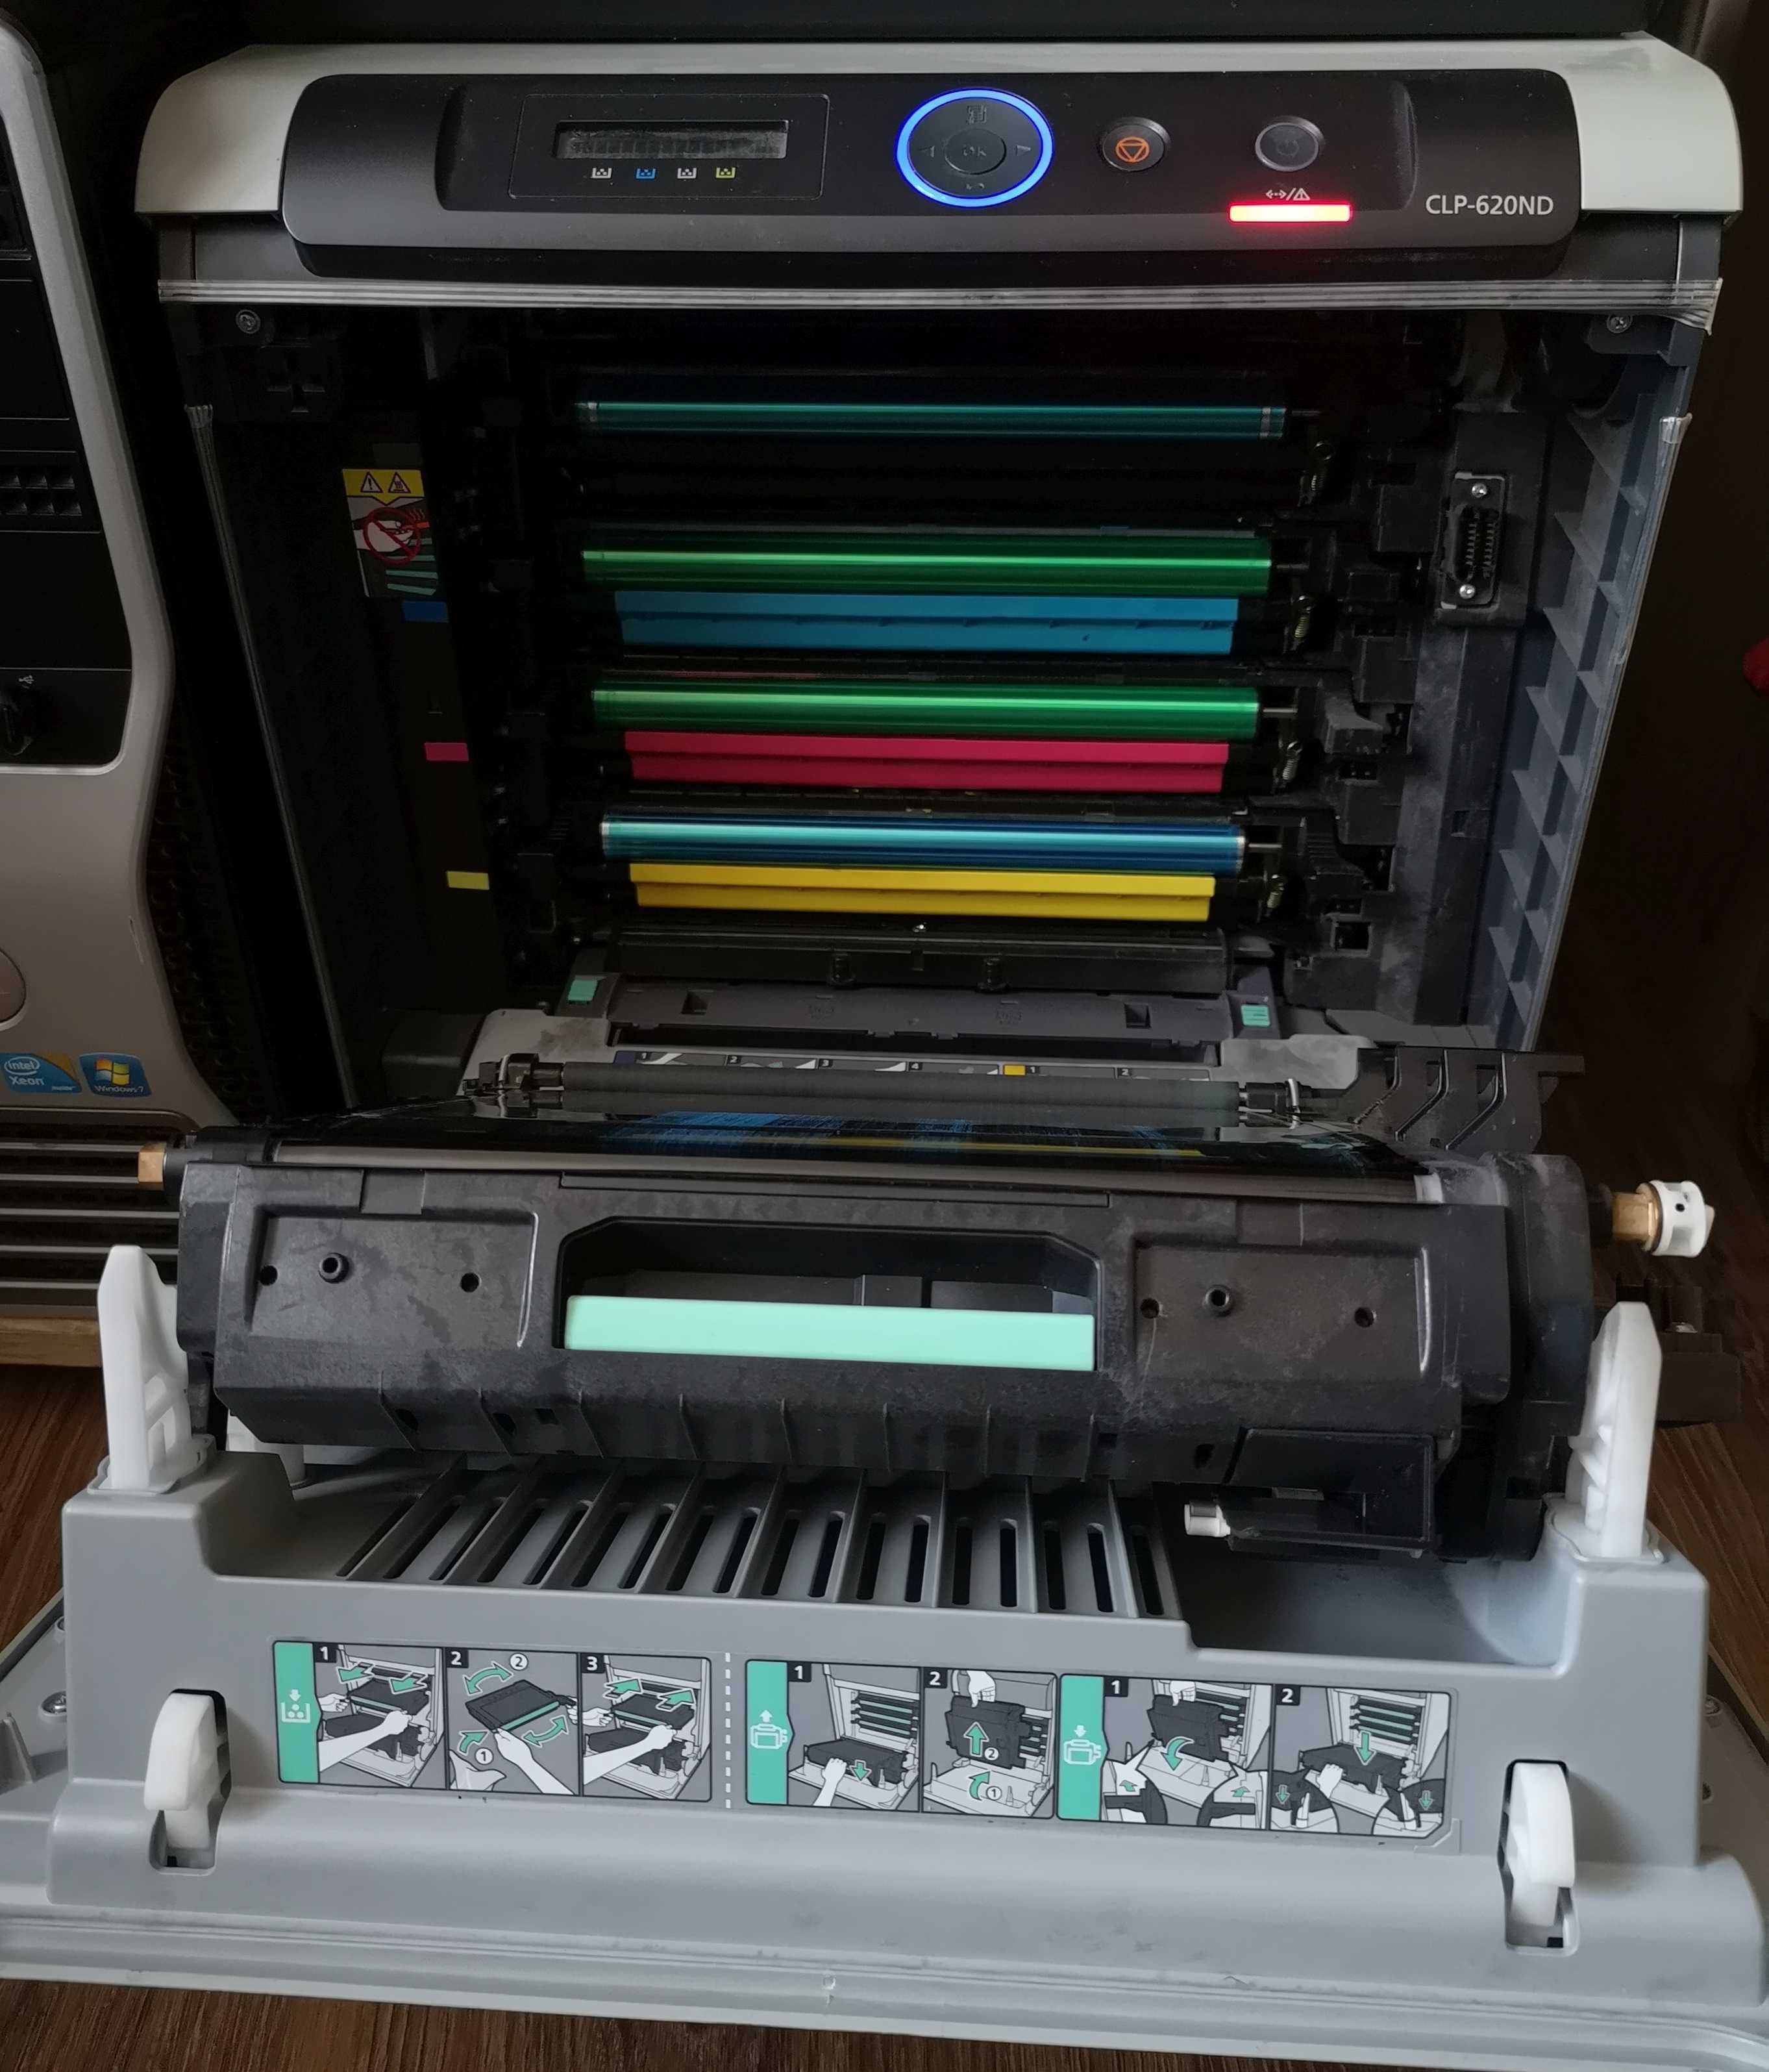 Vand imprimanta laser color Samsung CLP-620